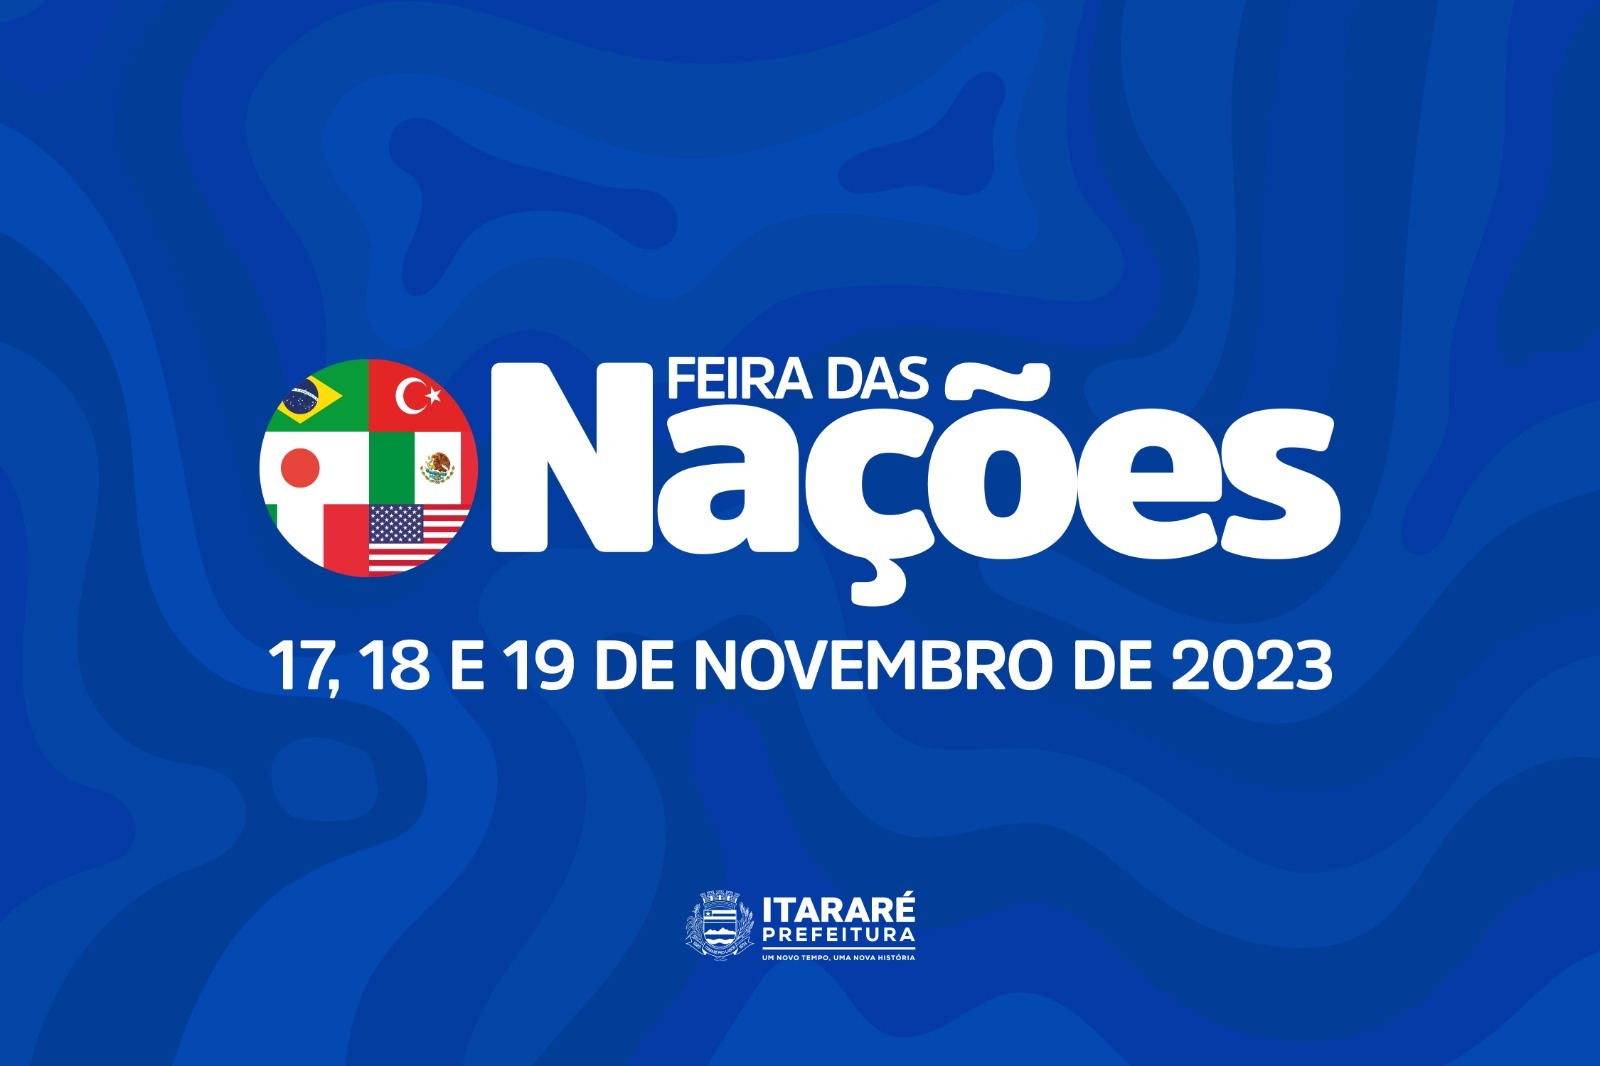 Prefeitura de Itararé (SP) promove Feira das Nações 2023